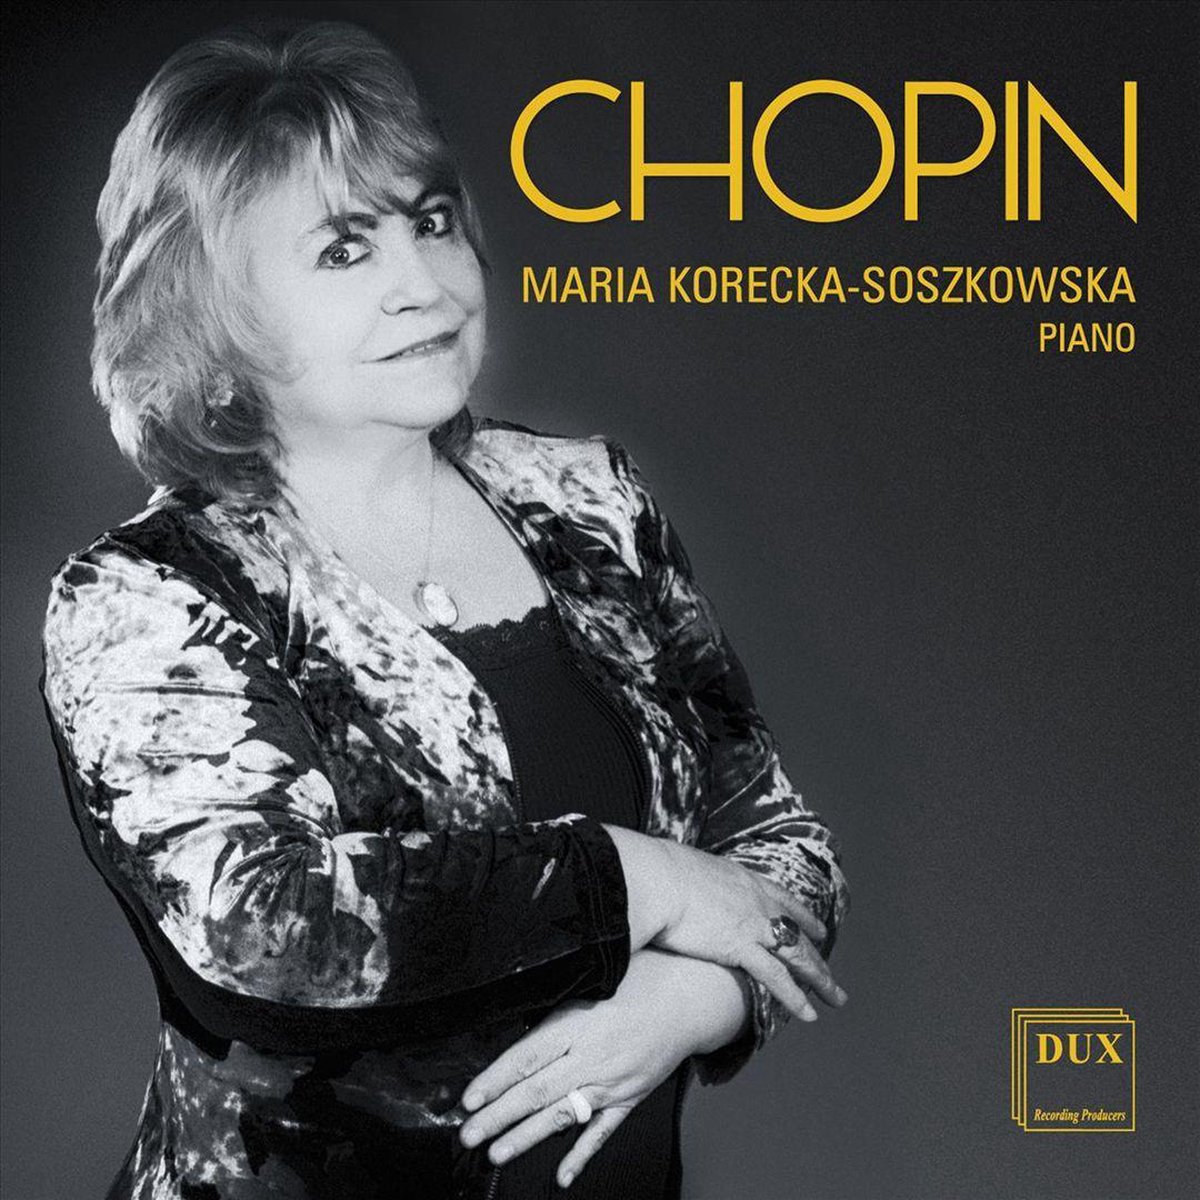 Chopin - Maria Korecka-Soszkowska